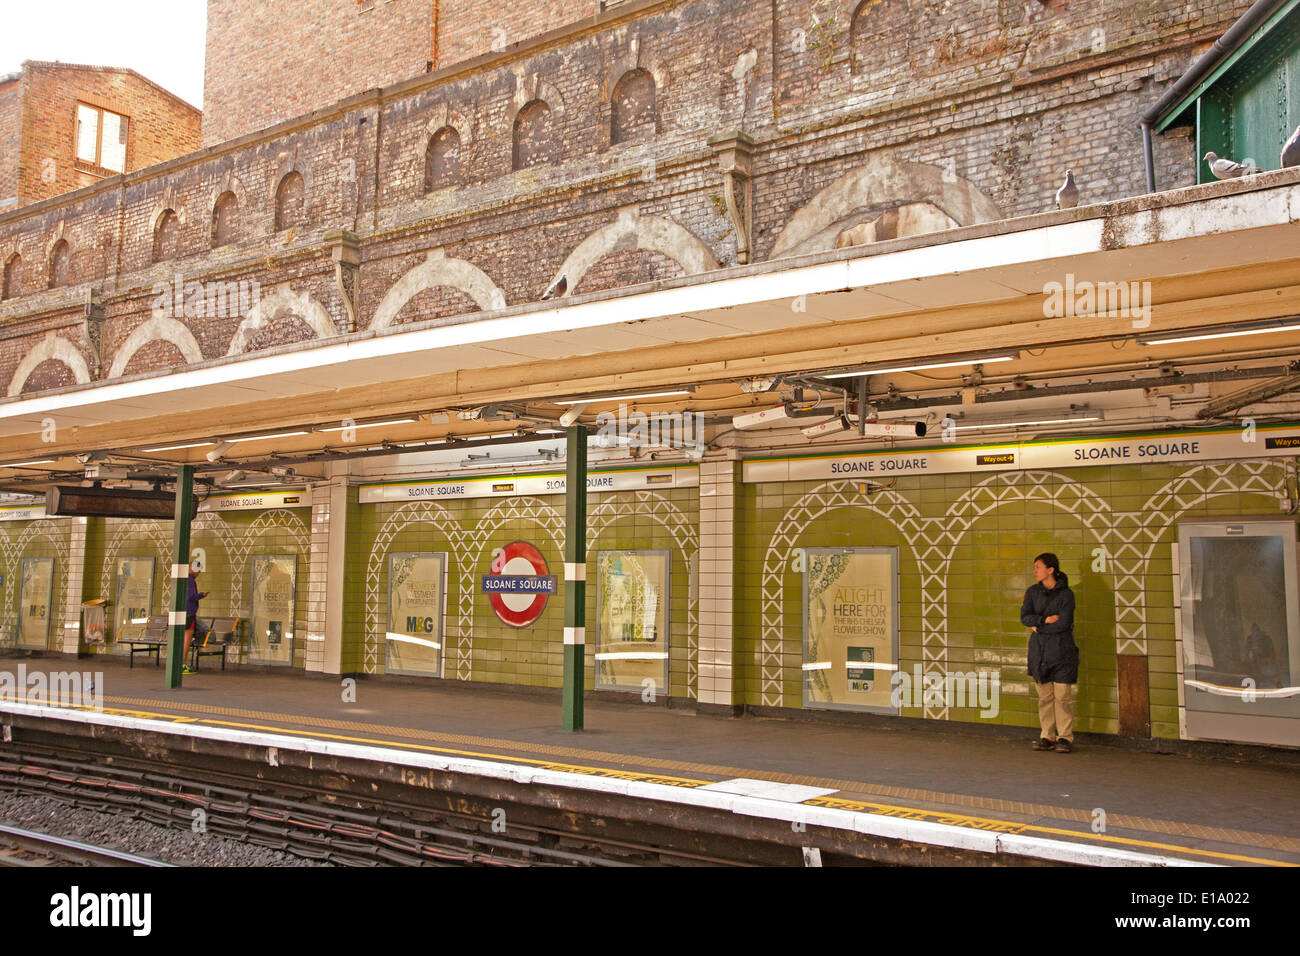 London, England, UK. Sloane Square Underground Station with people waiting for tube train Stock Photo